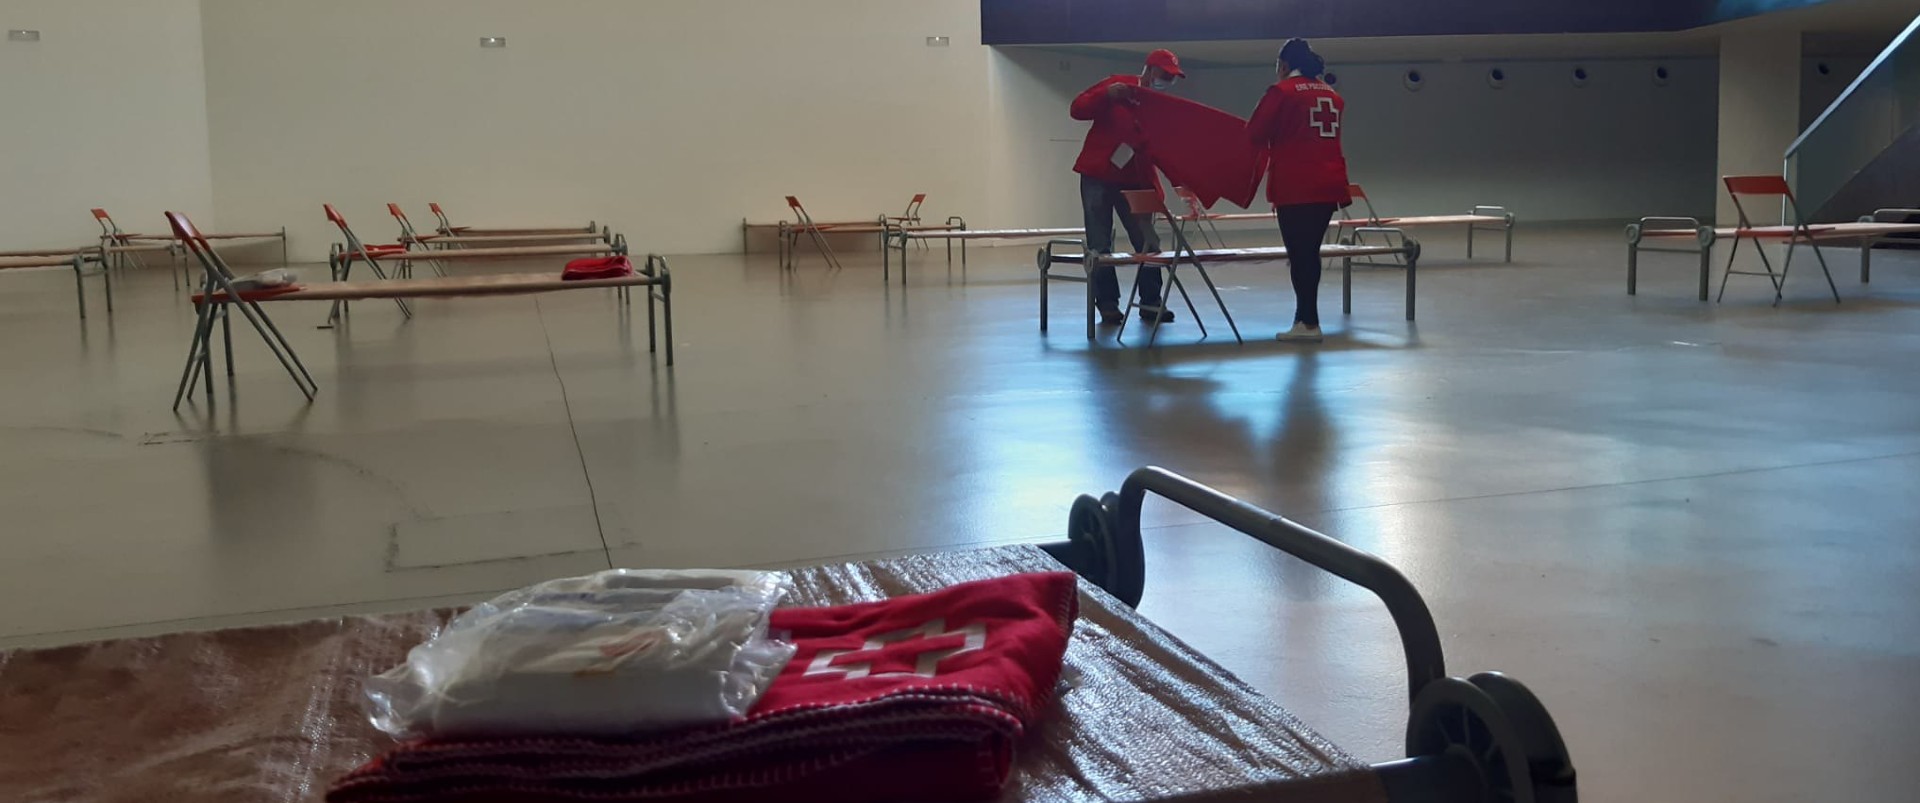 Cruz Roja activa sus recursos ante el incendio más grave en España en lo que llevamos de año